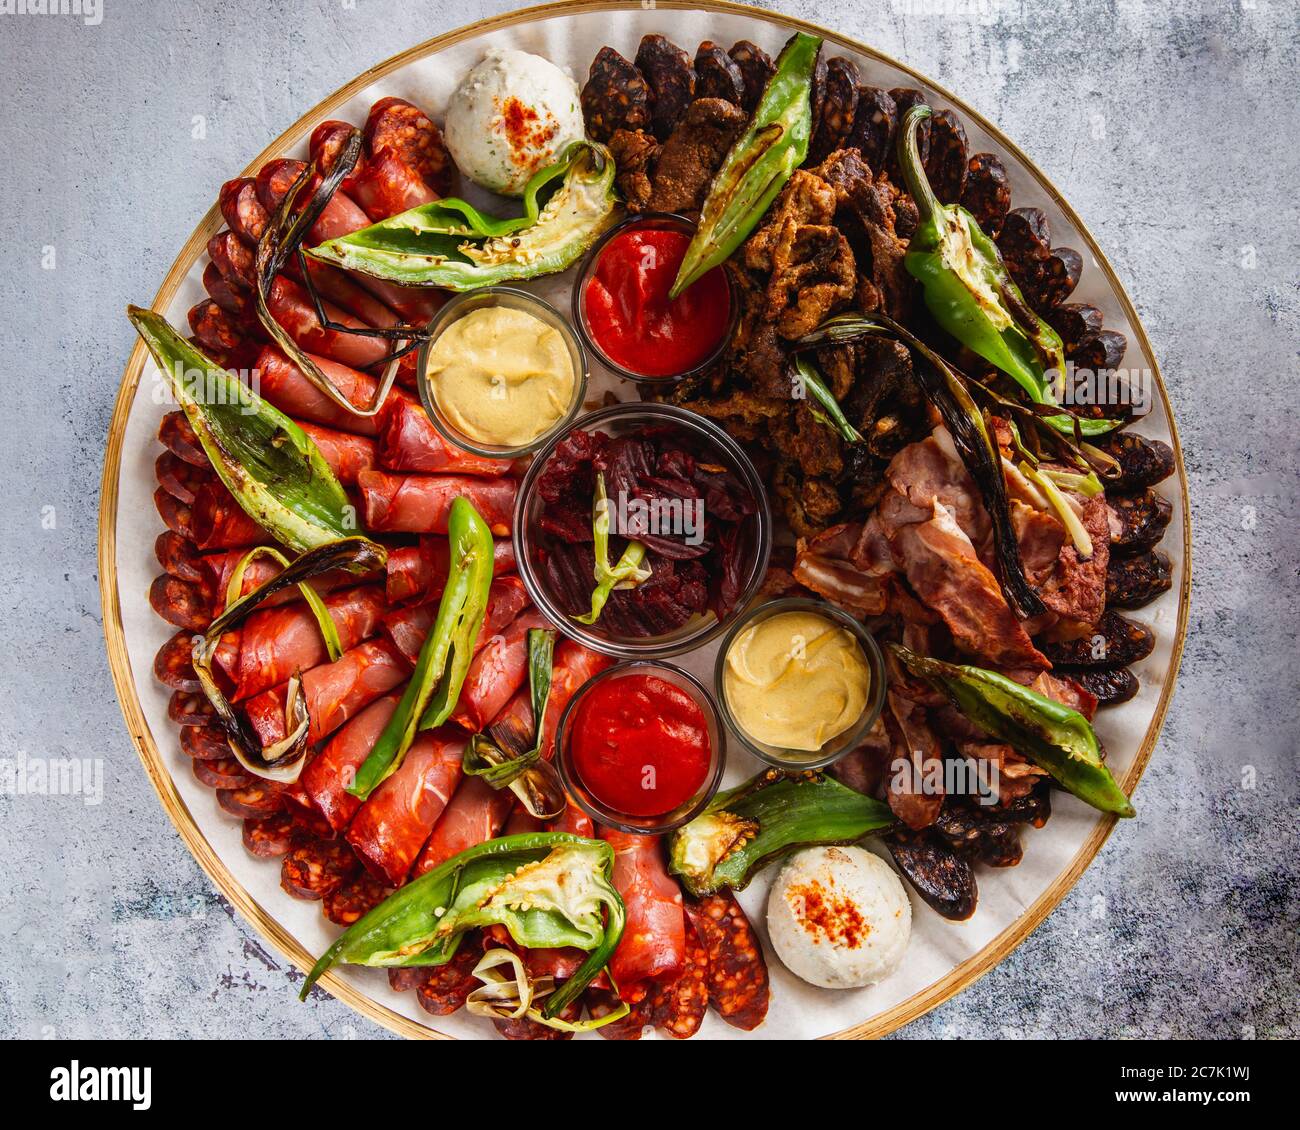 Verschiedene Fleisch- und Wurstsorten sowie gegrilltes Gemüse auf einem runden Teller Stockfoto